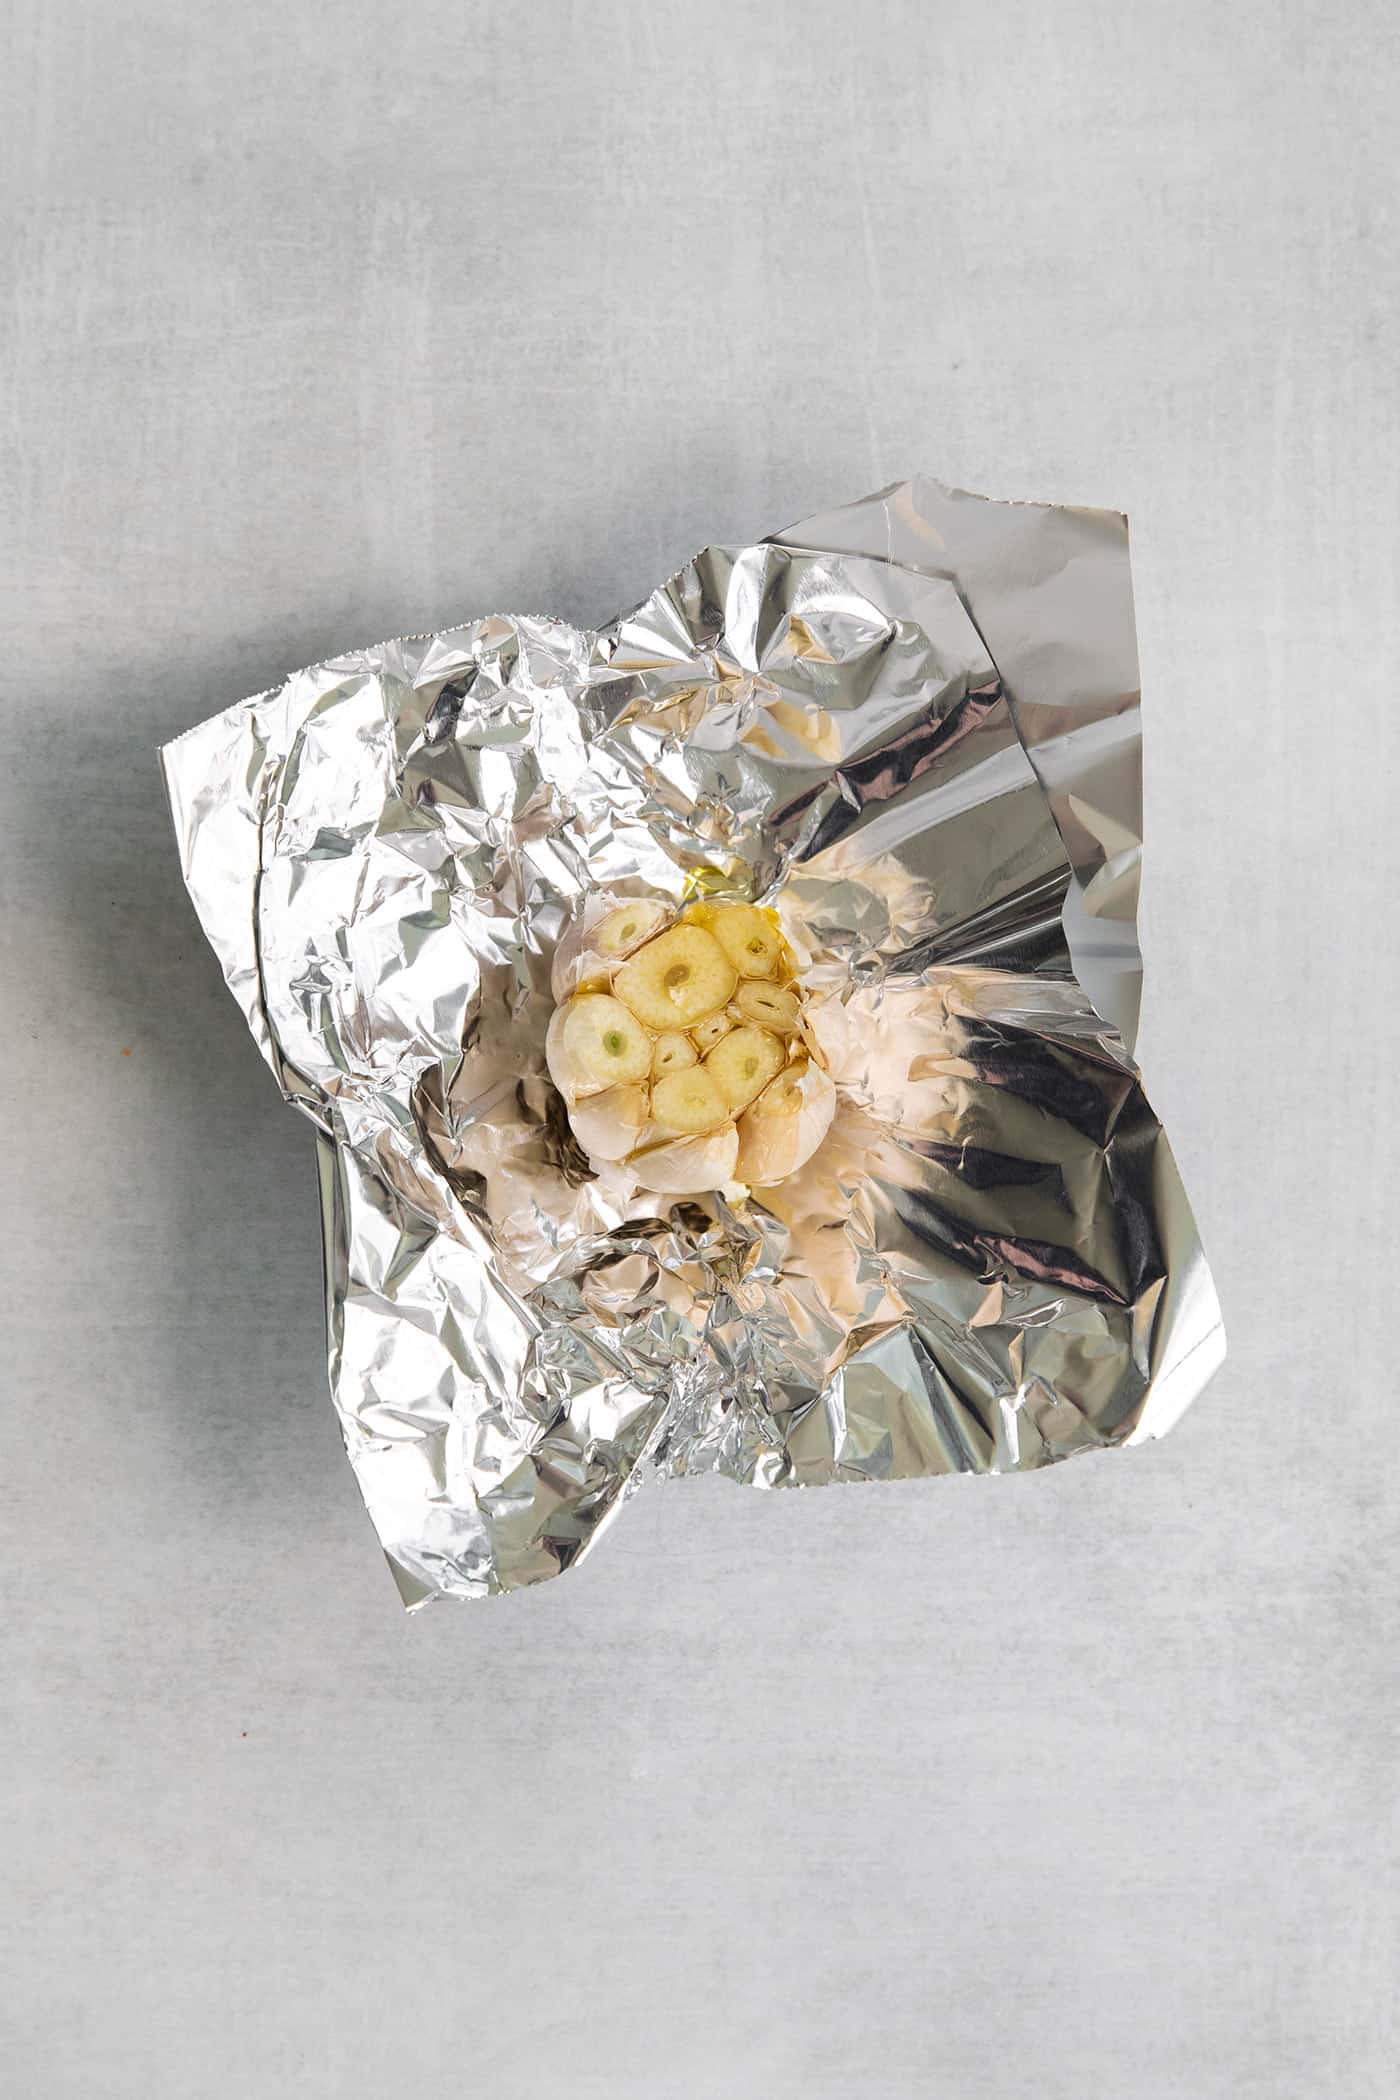 A head of garlic on a piece foil